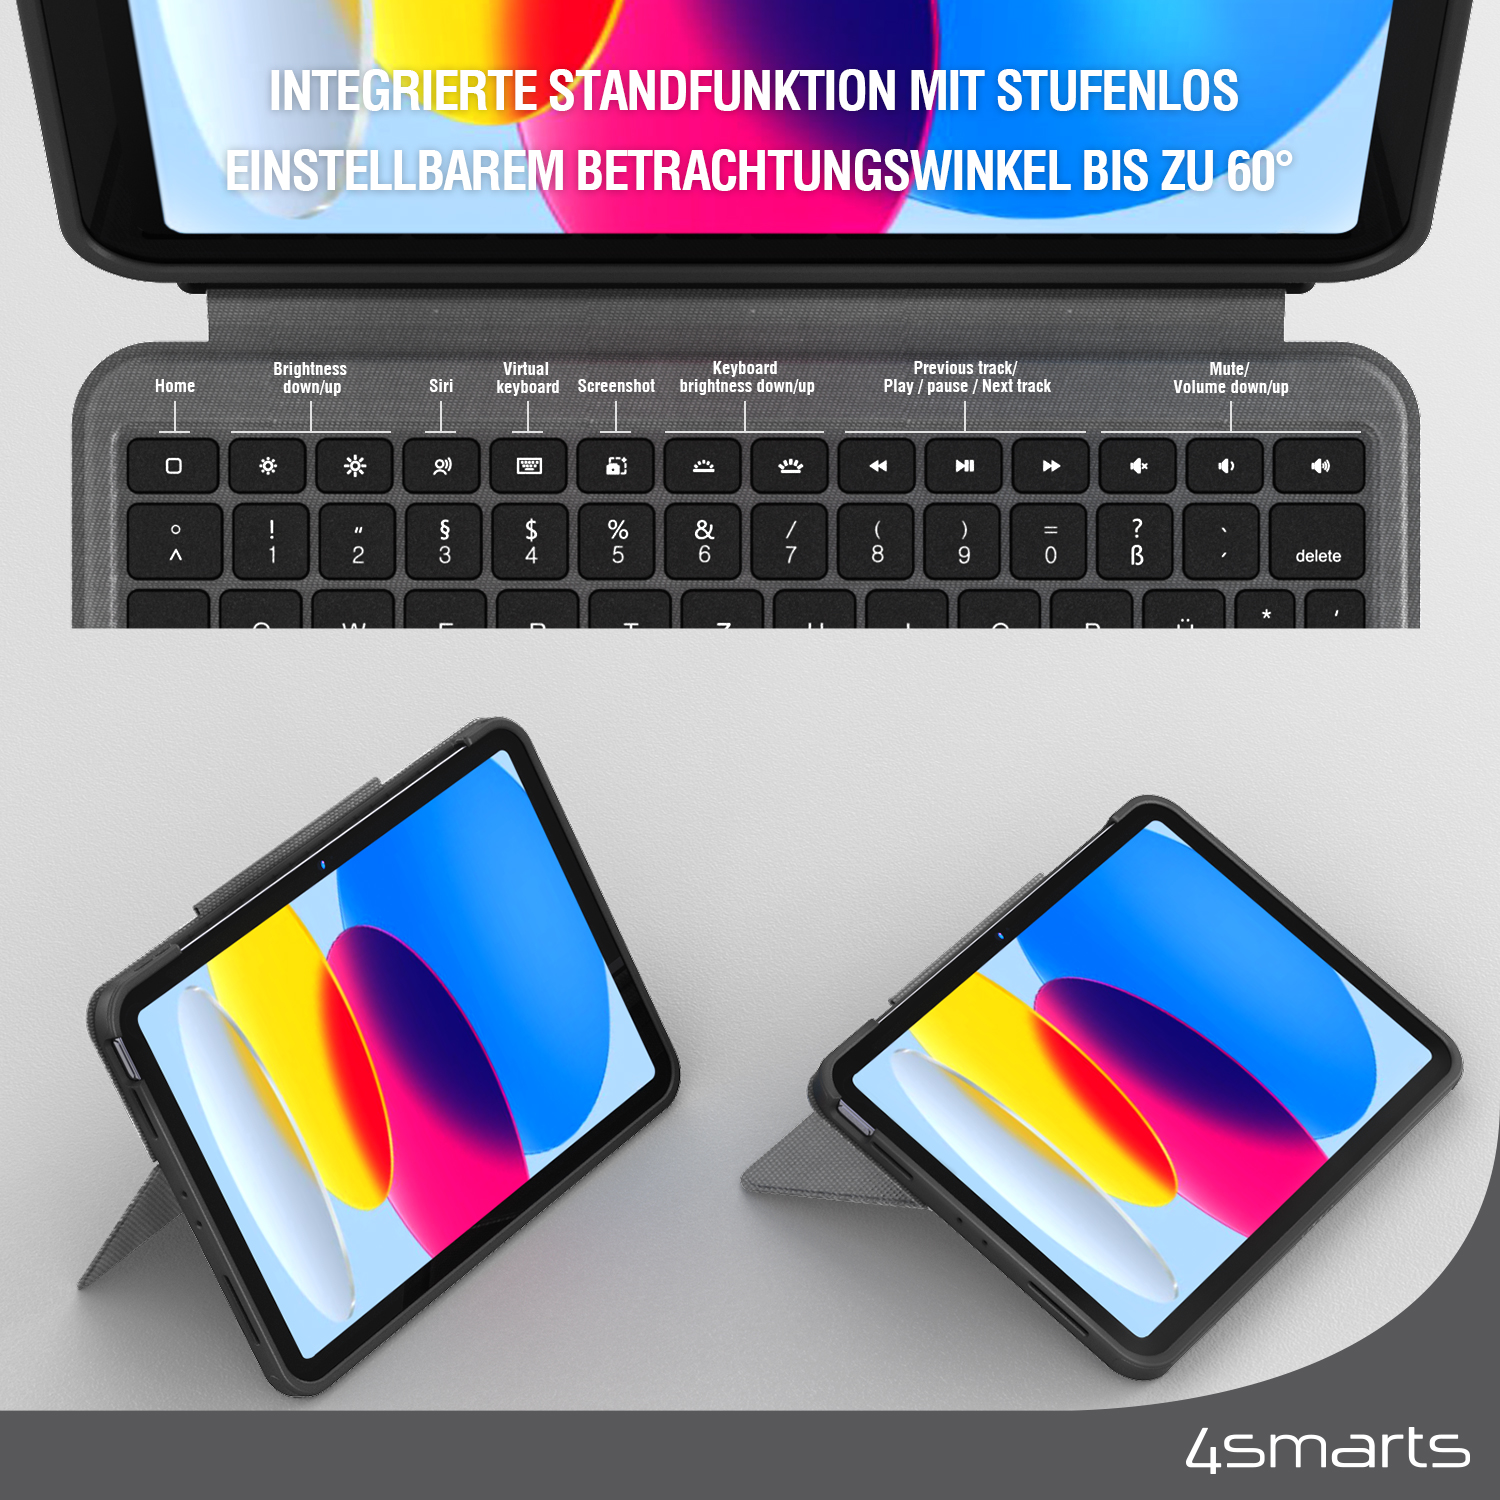 Das 4smarts Case 2in1 Solid iPad Tastatur verfügt über eine integrierte Standfunktion mit einstellbarem Betrachtungswinkel.